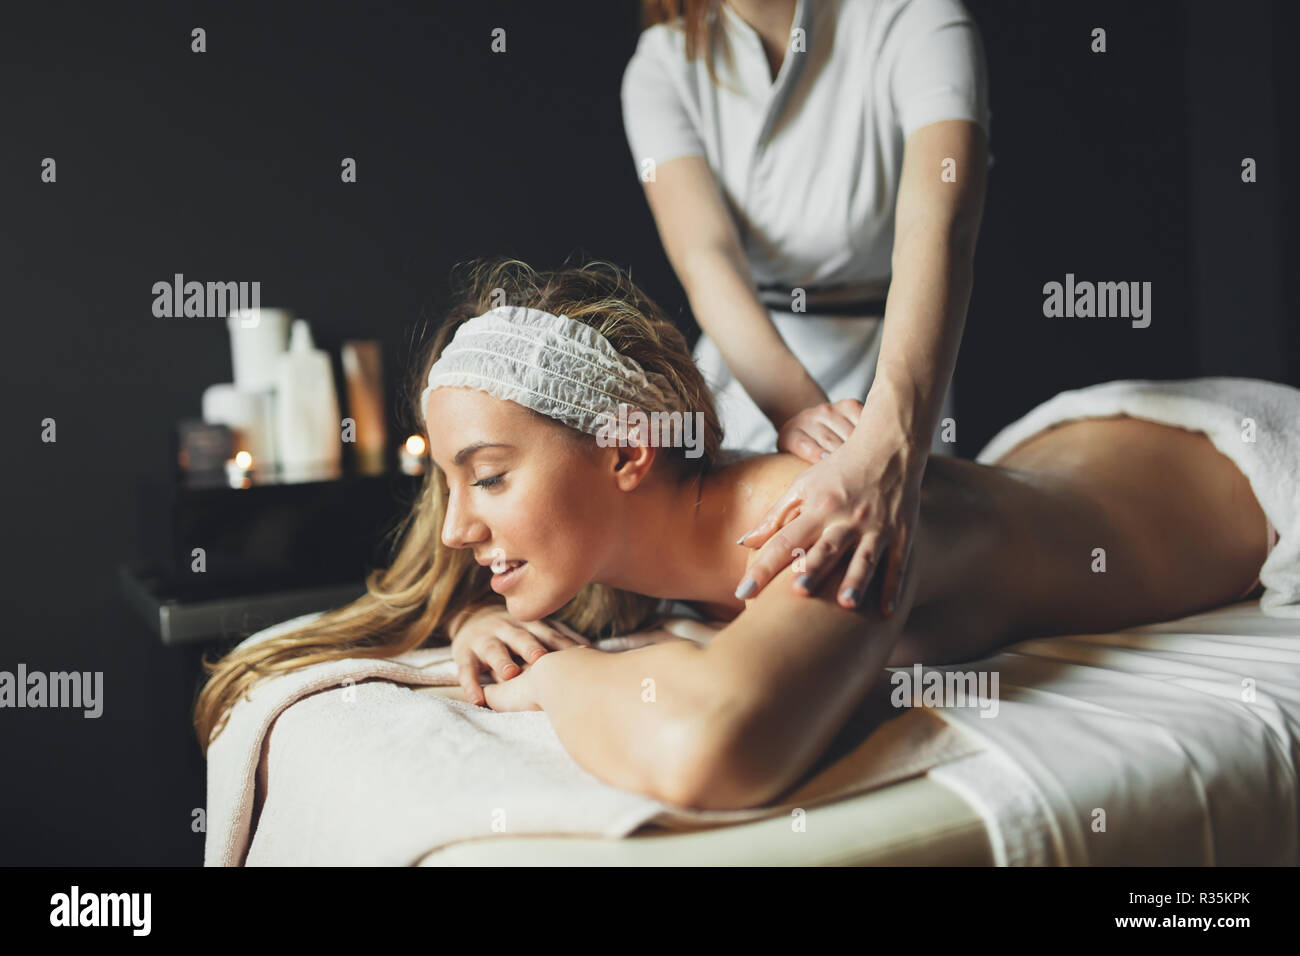 Beautiful young and cute woman enjoying massage treatment Stock Photo